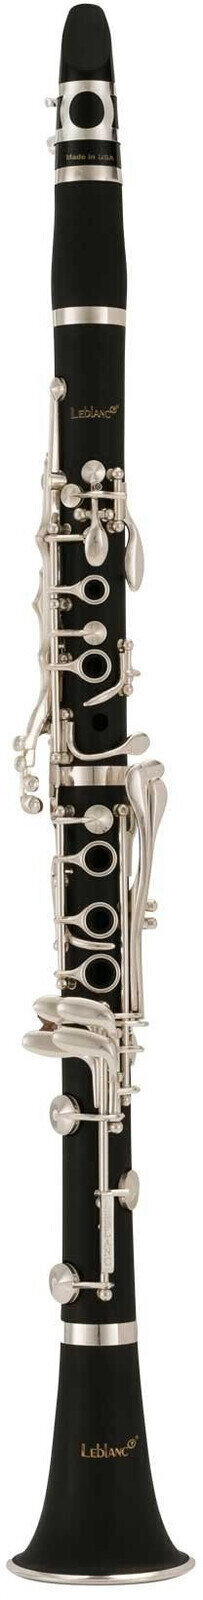 Bb-klarinet Leblanc Bb CL650 Bb-klarinet